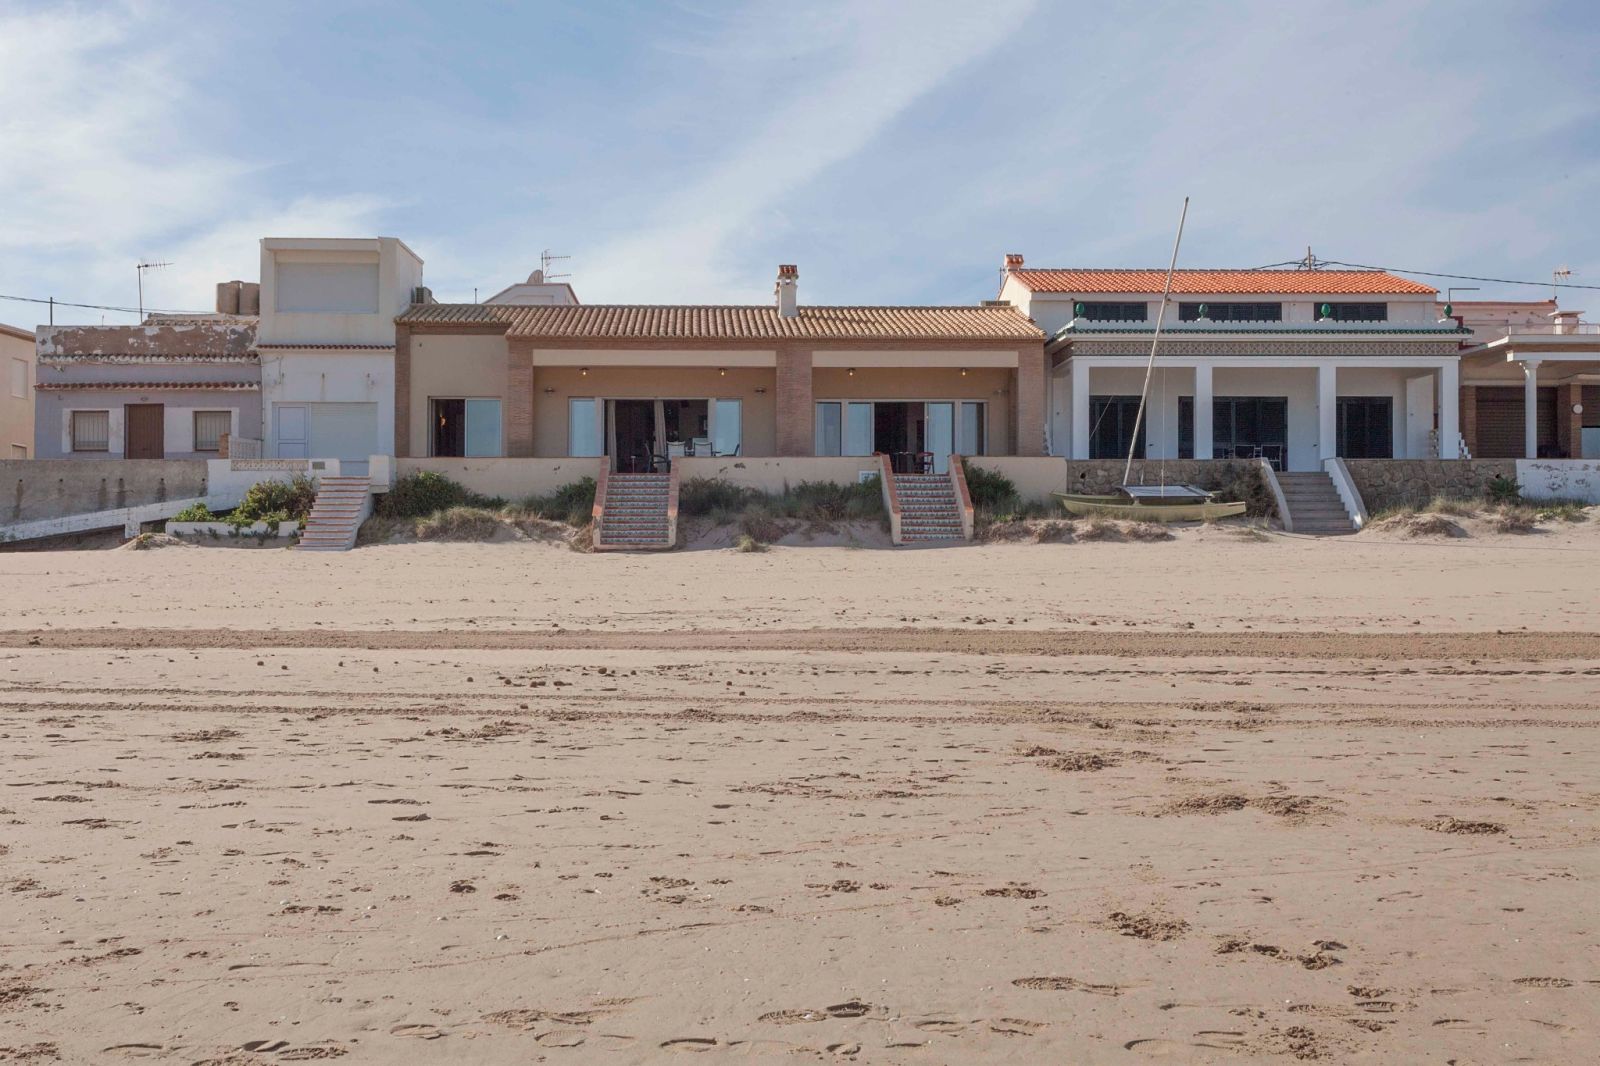 Luxury townhouse on the beachfront of Playa de Oliva